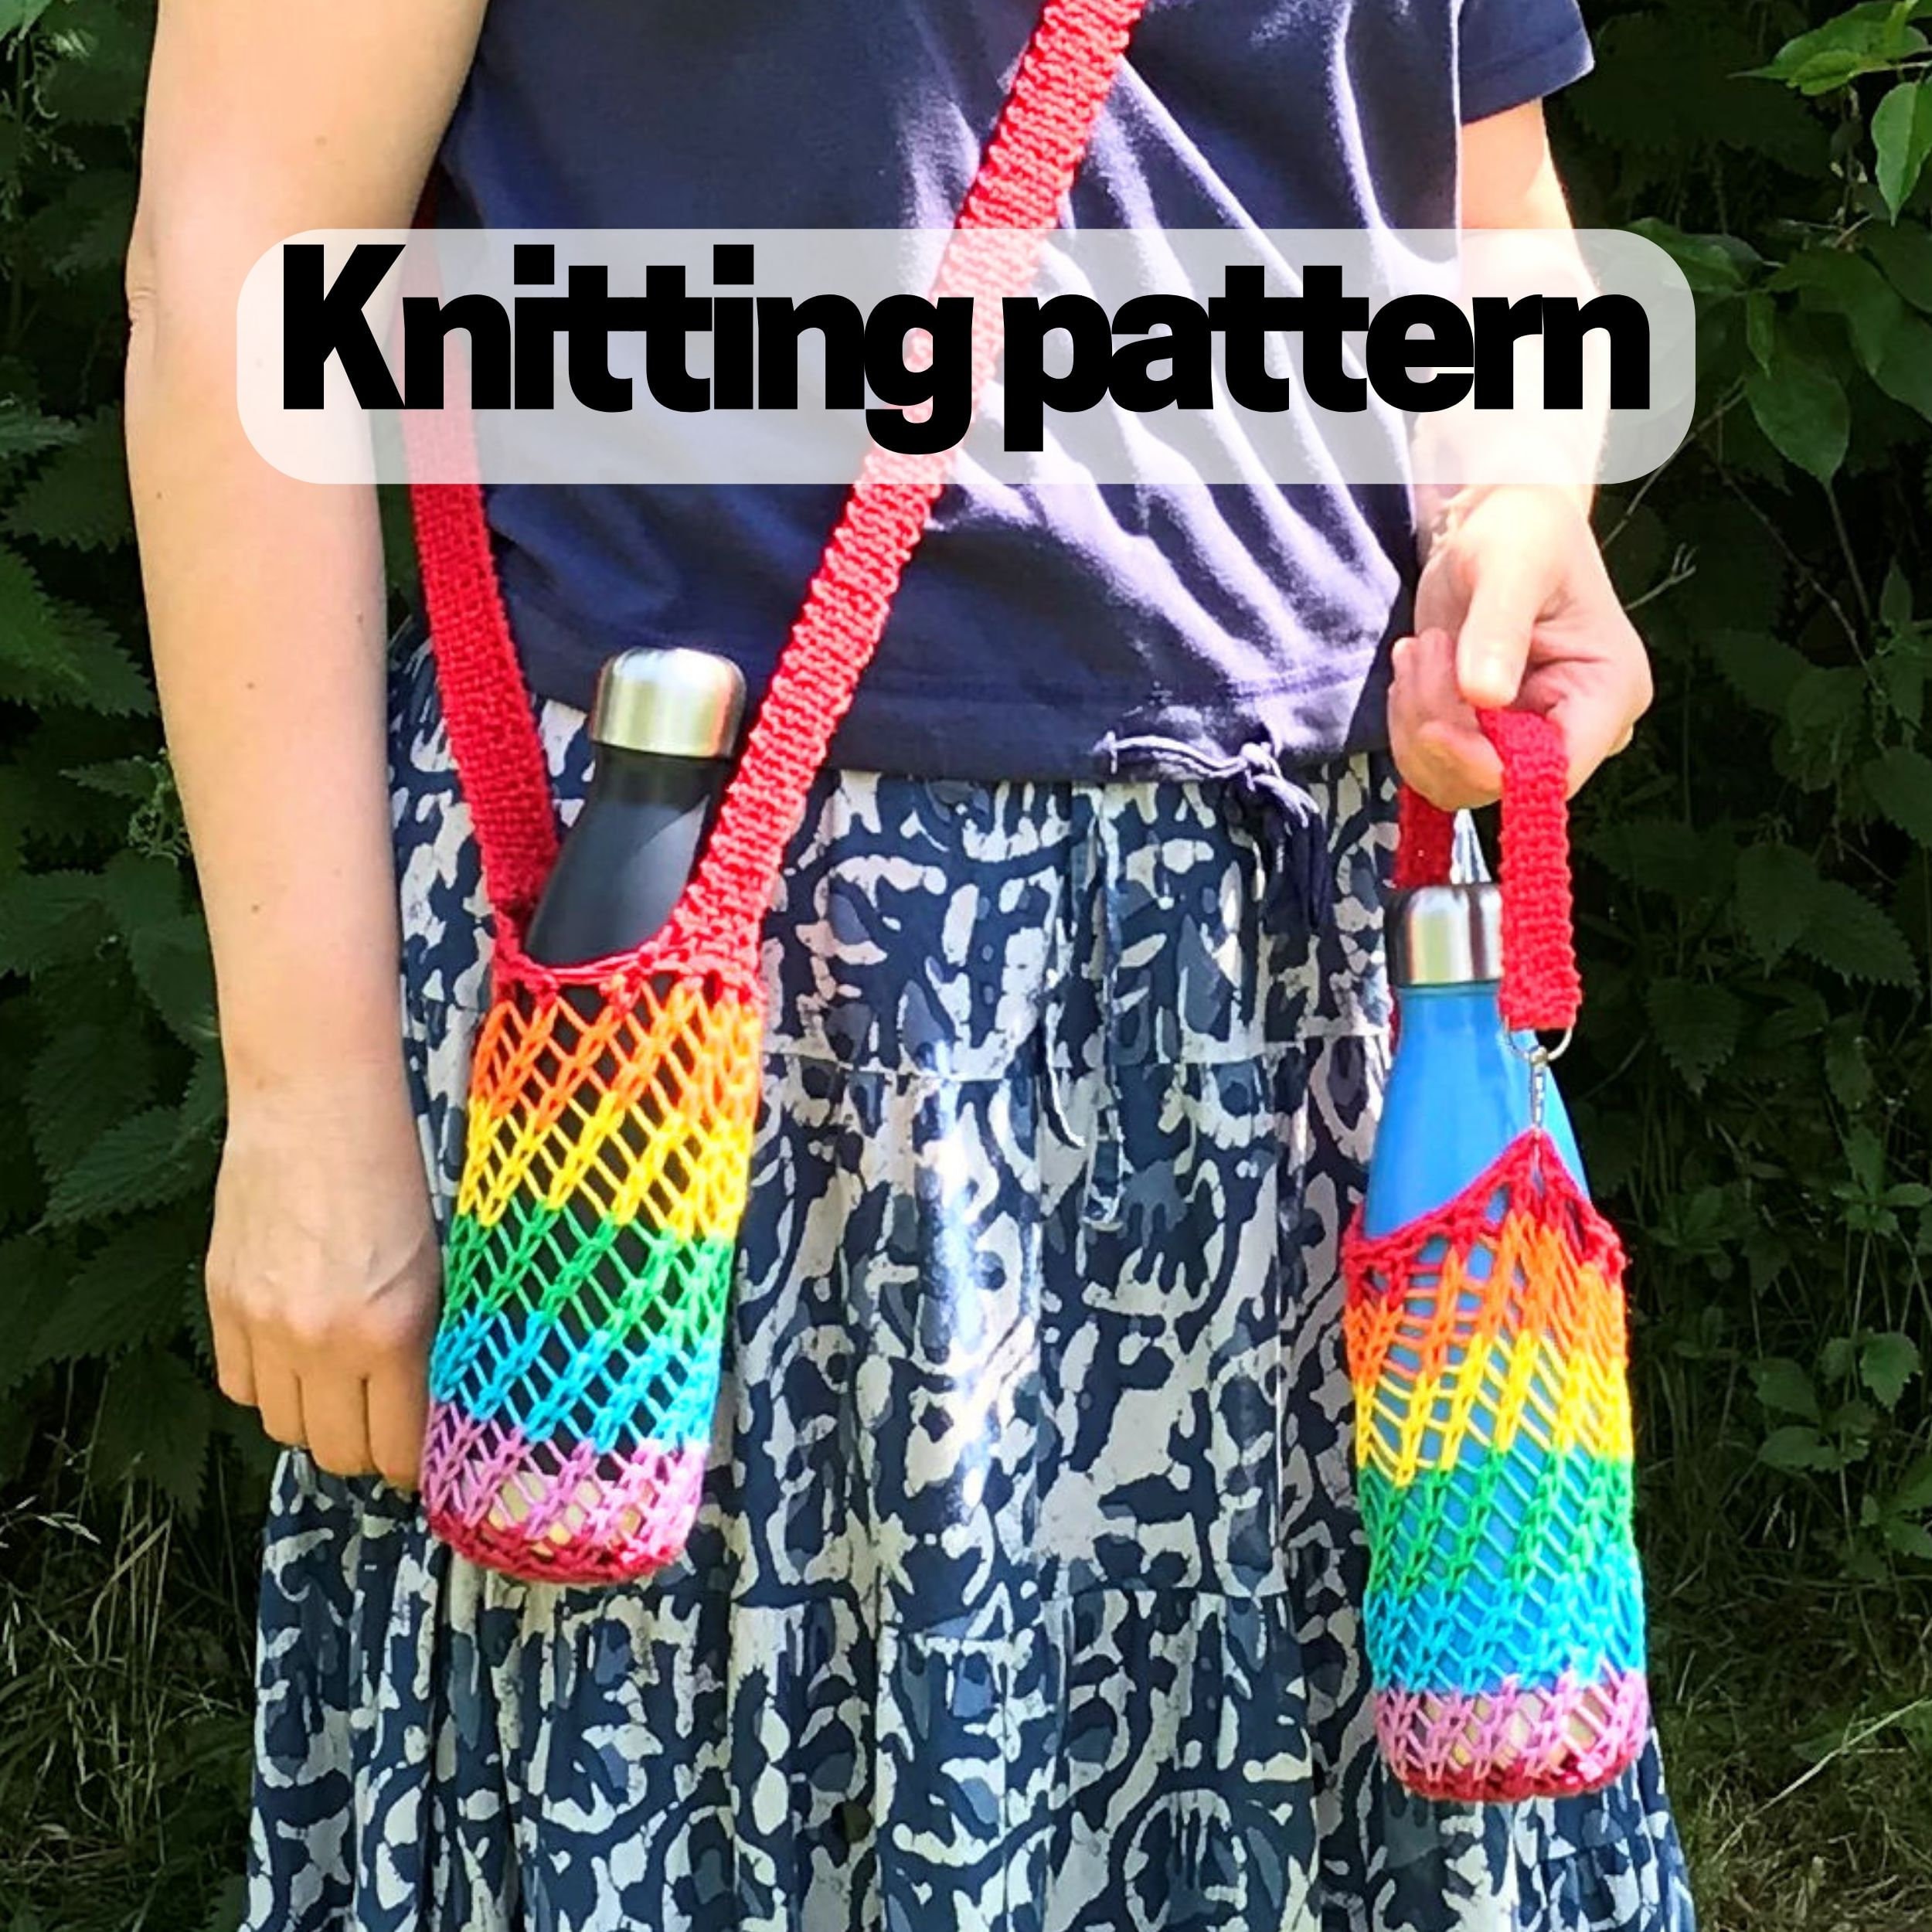 Water Bottle Sling Knitting Pattern : Blissful : Brome Fields